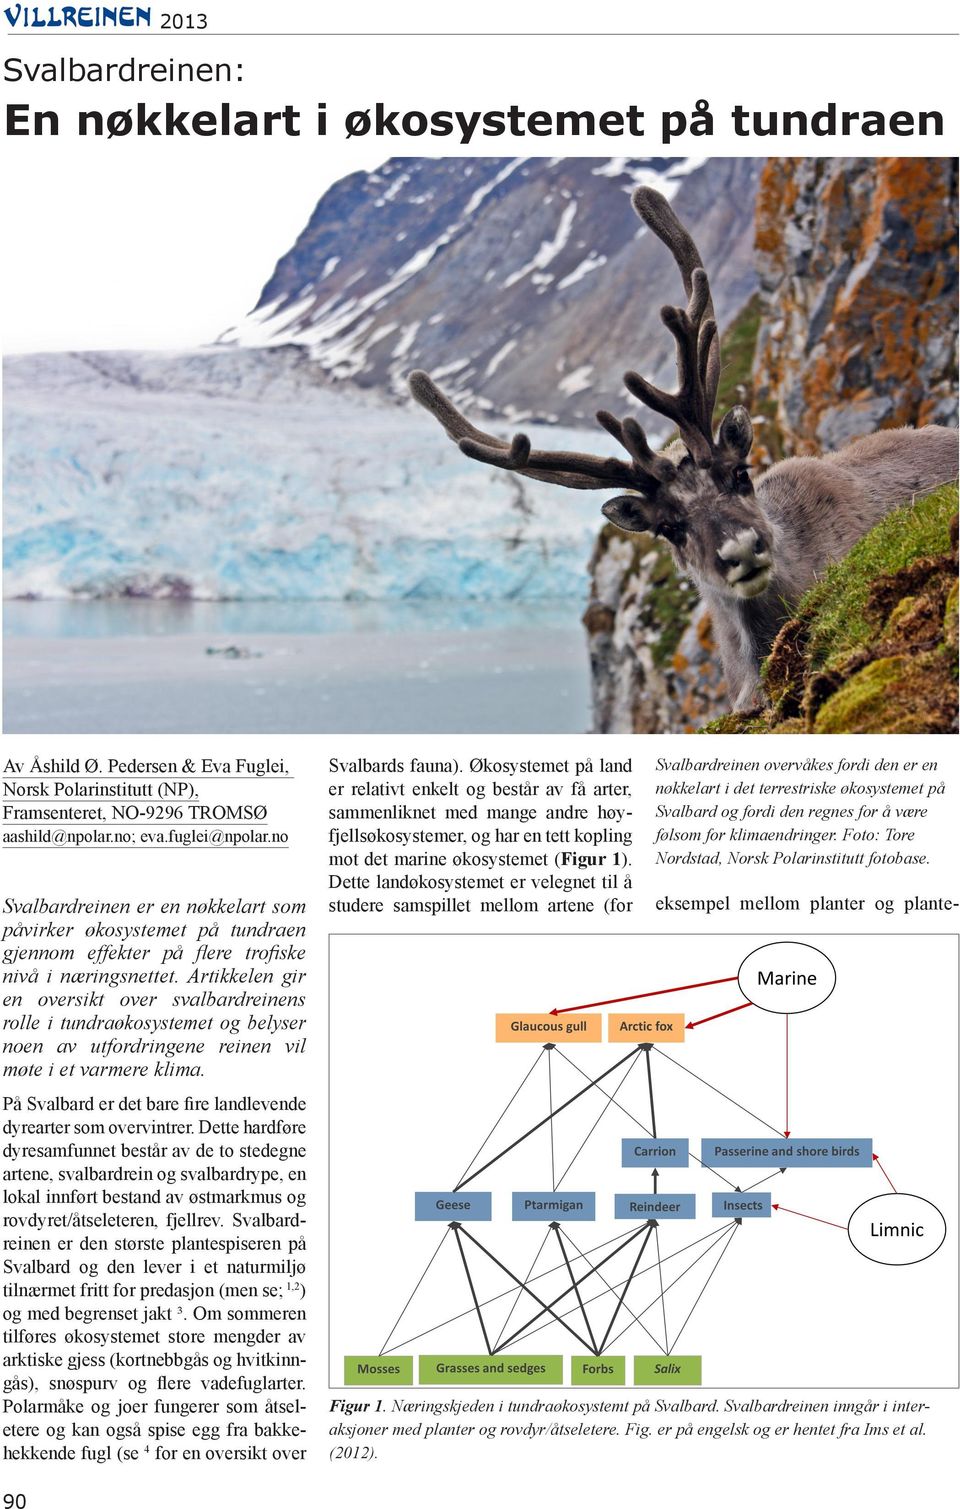 Artikkelen gir en oversikt over svalbardreinens rolle i tundraøkosystemet og belyser noen av utfordringene reinen vil møte i et varmere klima. Svalbards fauna).